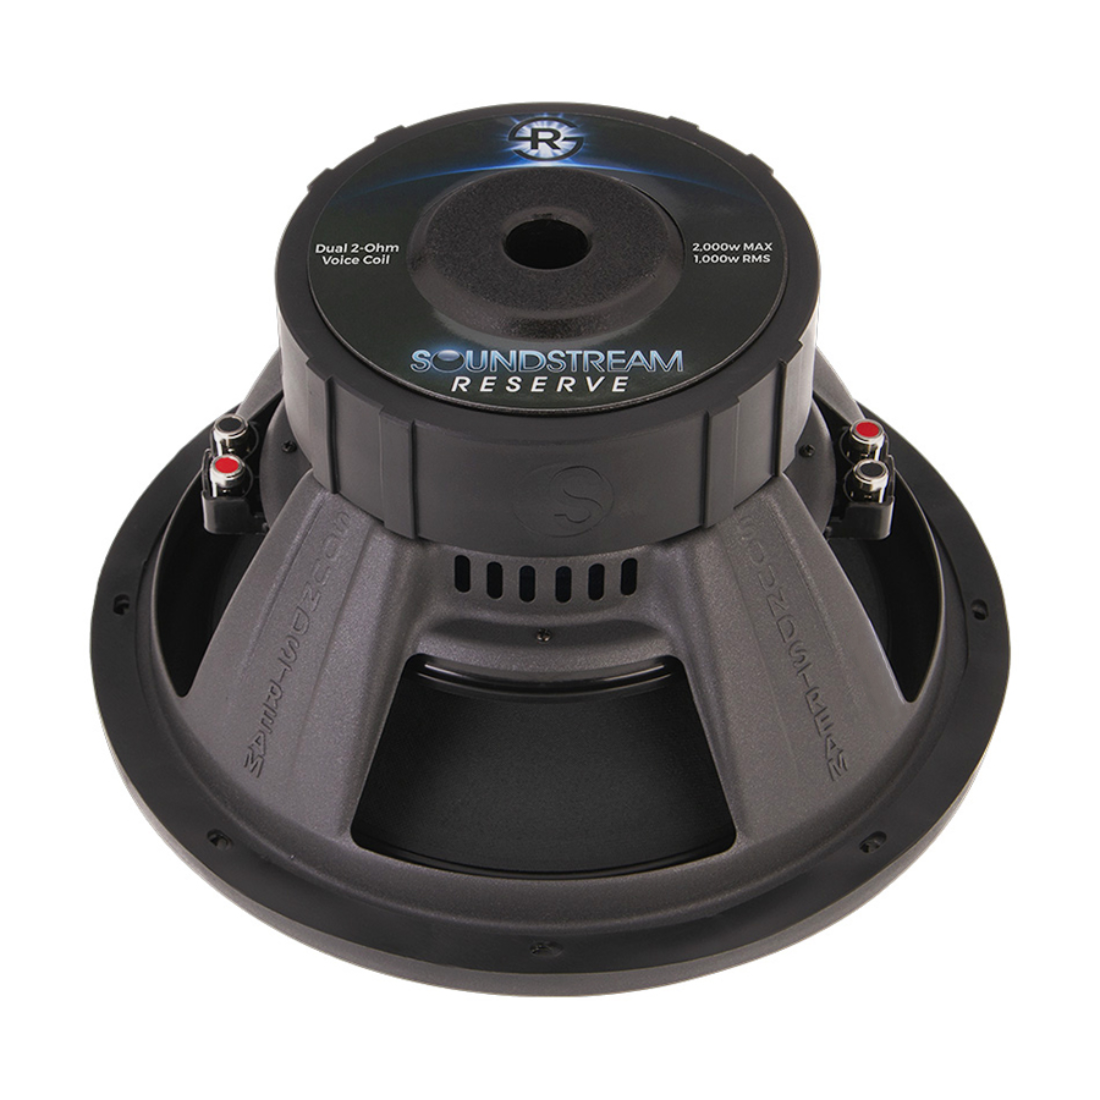 Soundstream R5.122 12" 2000W Max Dual 2-Ohm Voice Coil DVC Car Audio Subwoofer